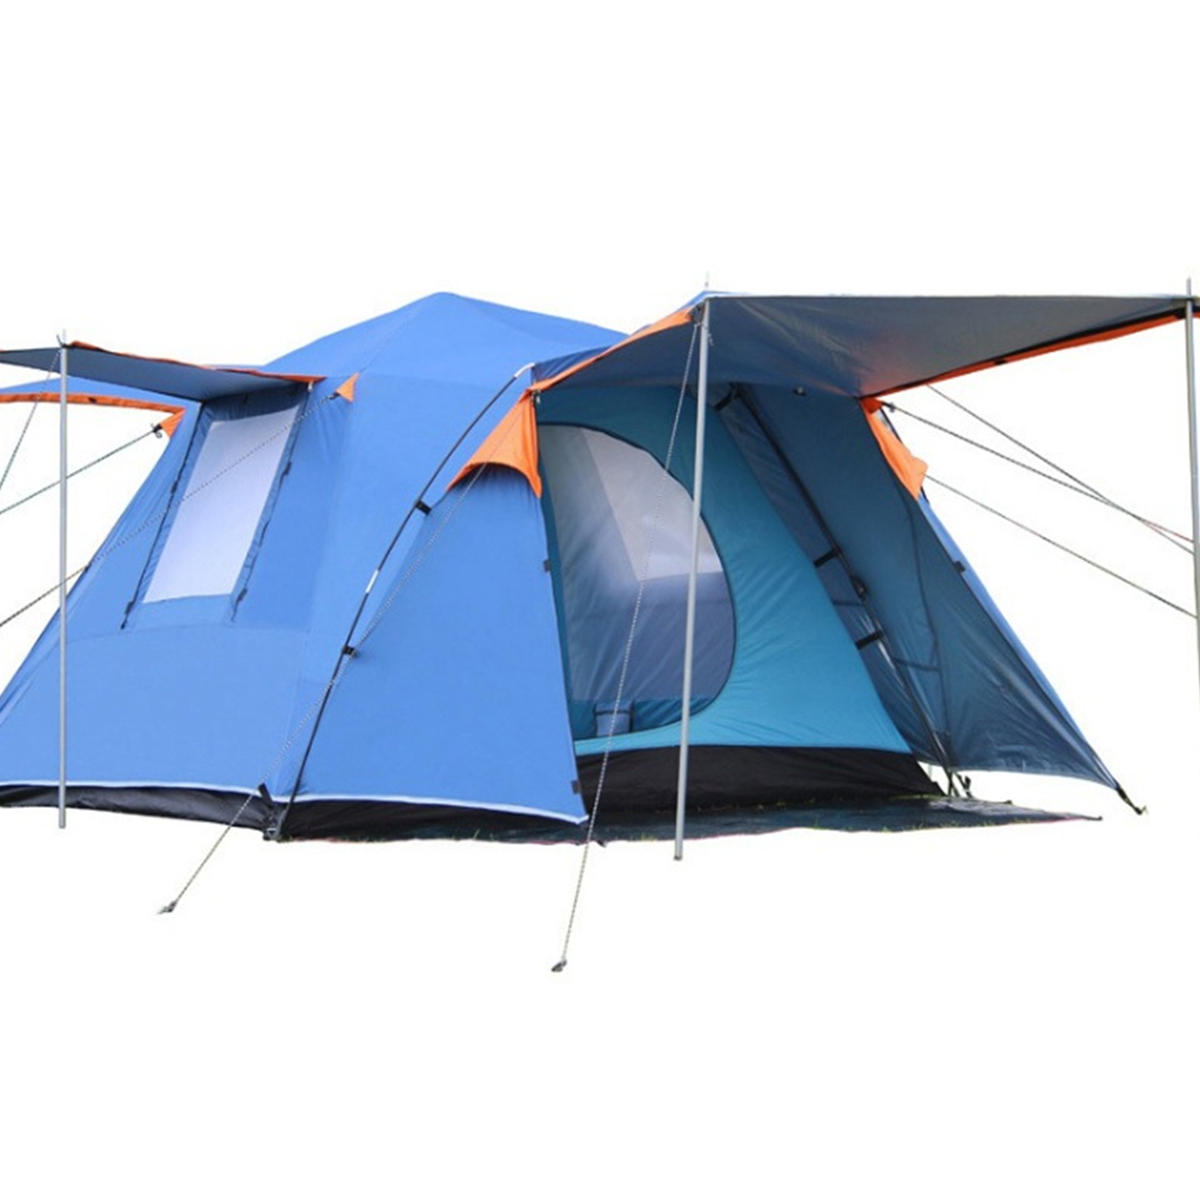 Рюкзак для пеших прогулок с автоматической палаткой на 3-4 человека, водонепроницаемой двухслойной крышей и тентом от солнца.